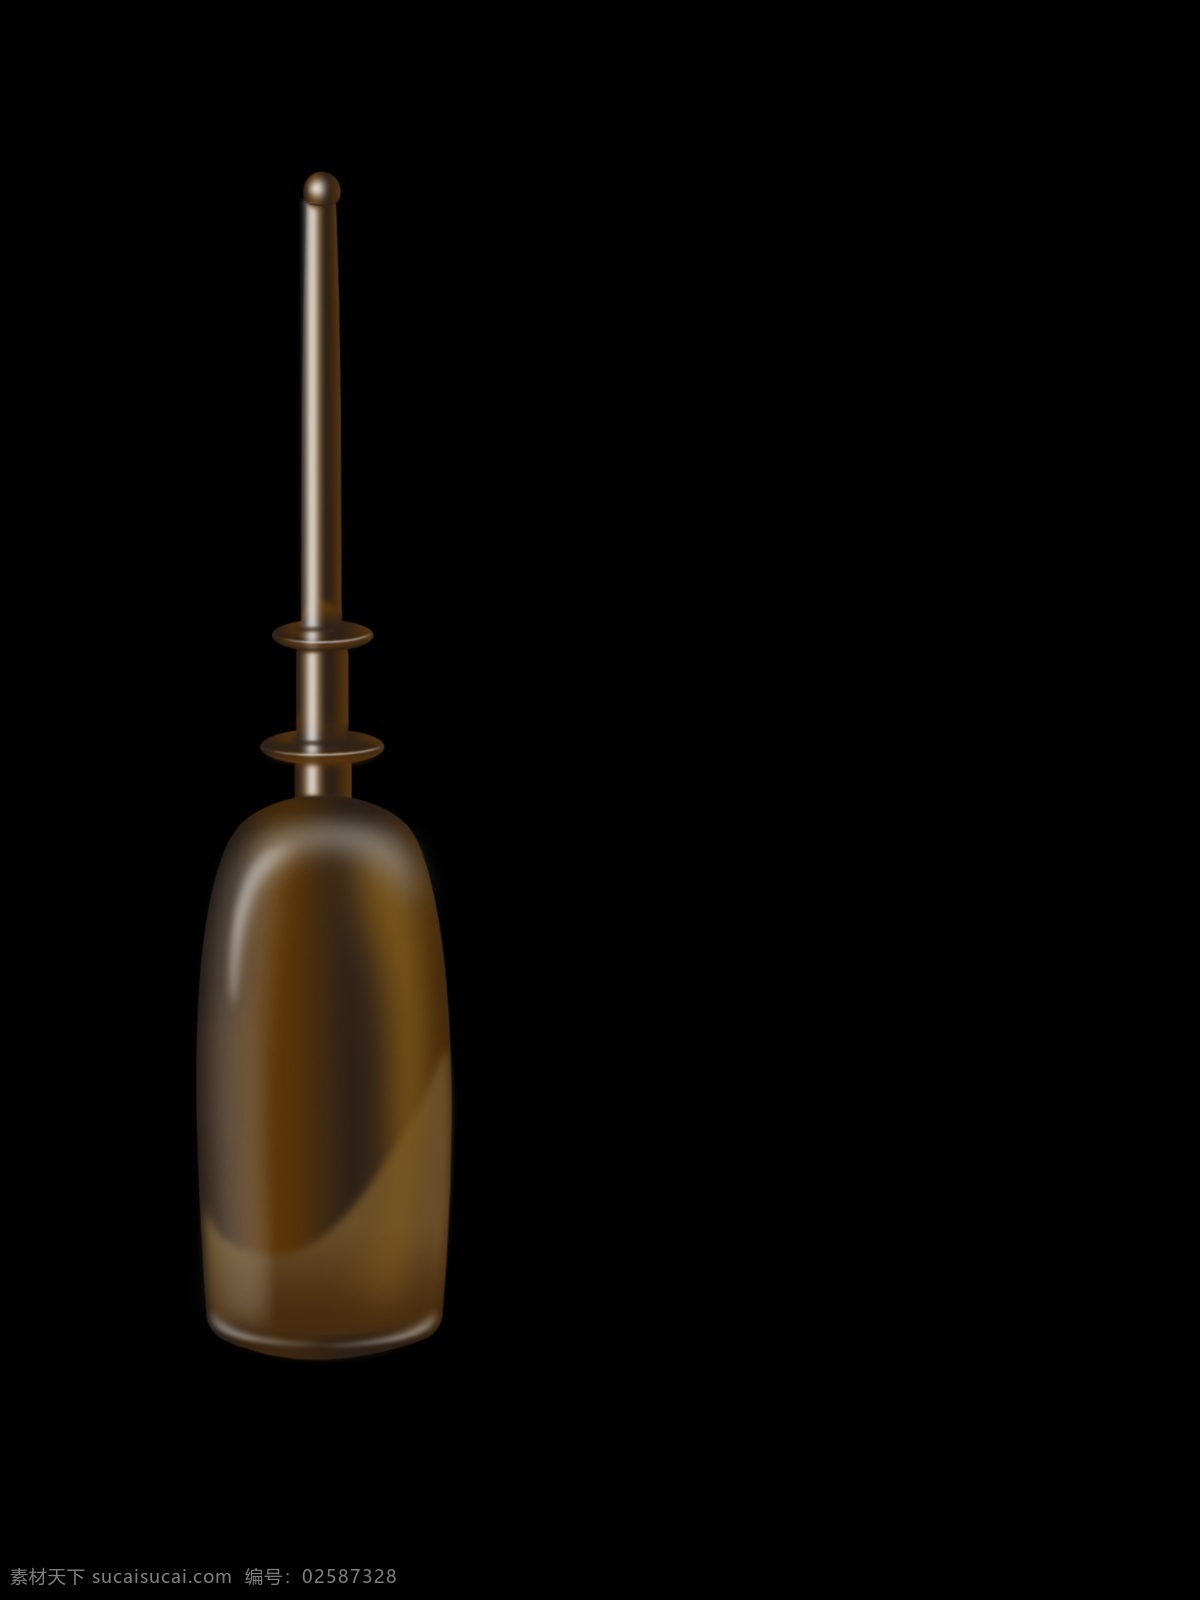 针筒棕色瓶子 精华类瓶子 化妆品 针筒 棕色瓶子 塑料 镀色 化妆品瓶子 分层 源文件